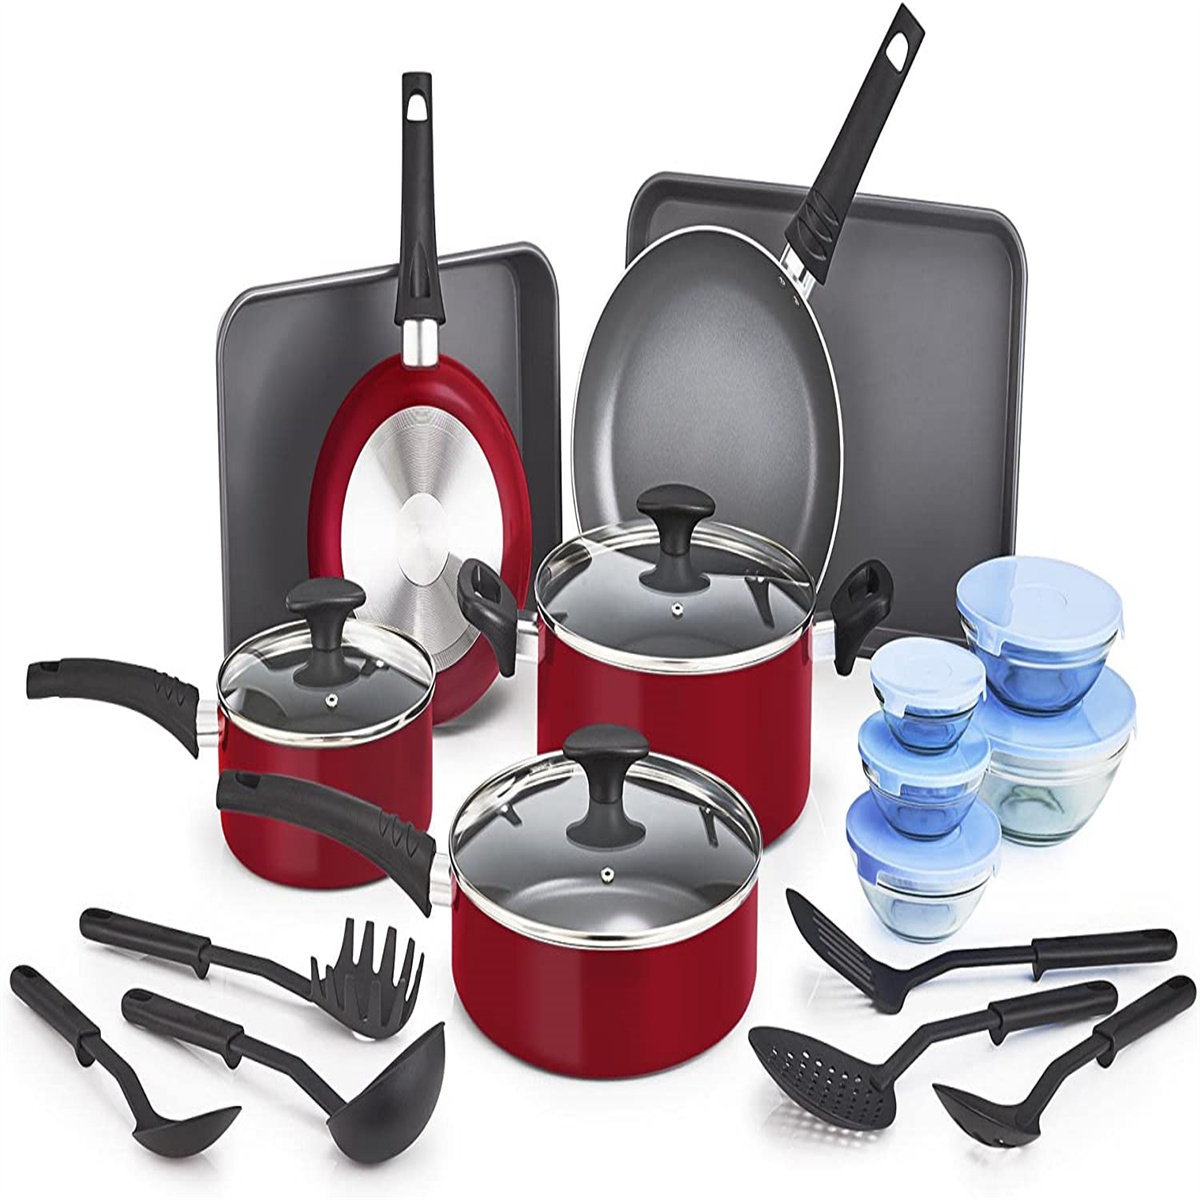 https://assets.wfcdn.com/im/65784214/compr-r85/2502/250204168/21-piece-non-stick-aluminum-cookware-set.jpg